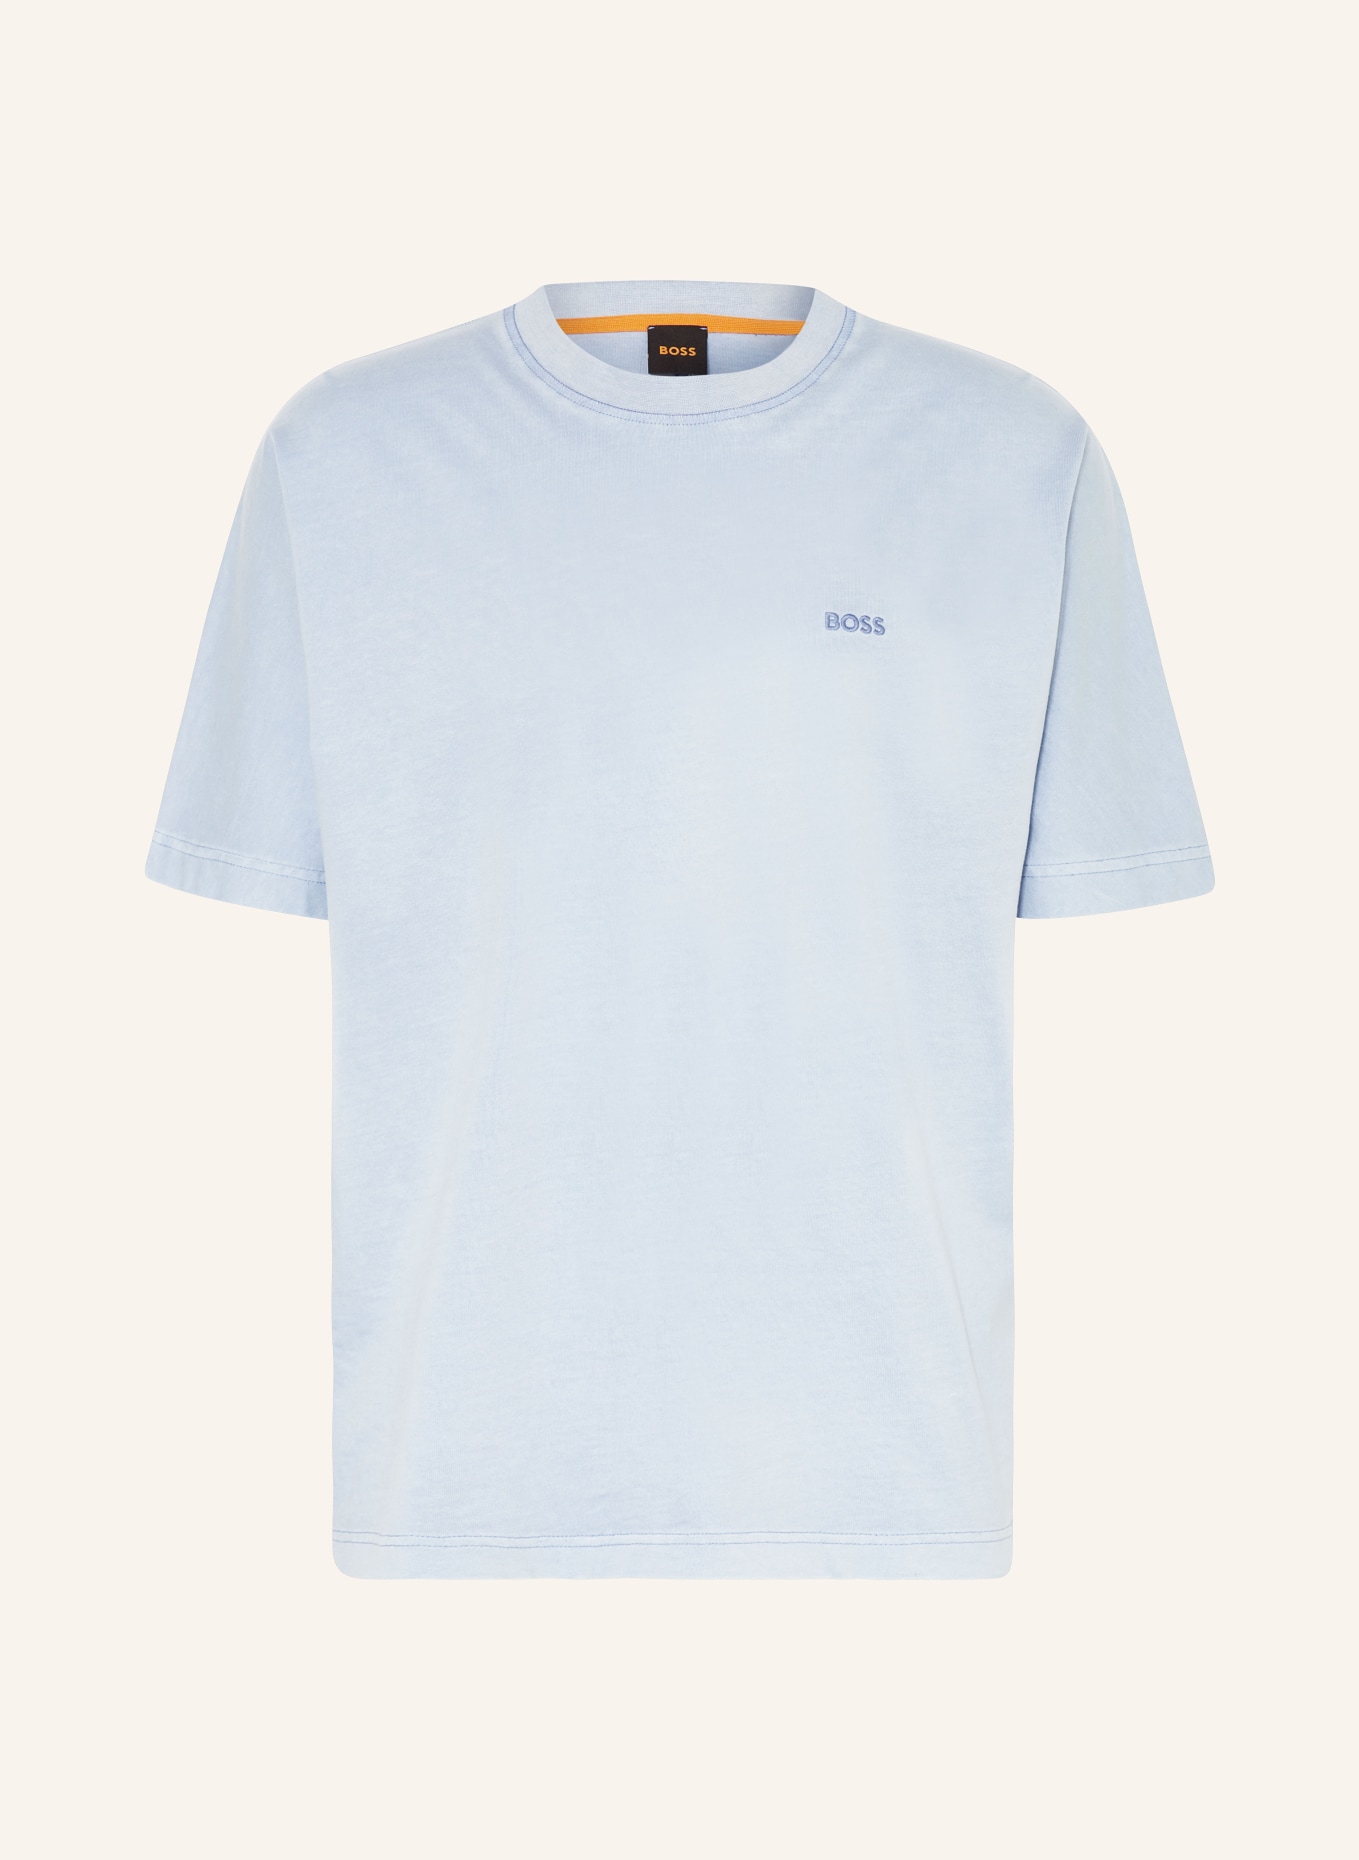 BOSS T-Shirt REGENERATIVE, Farbe: HELLBLAU (Bild 1)